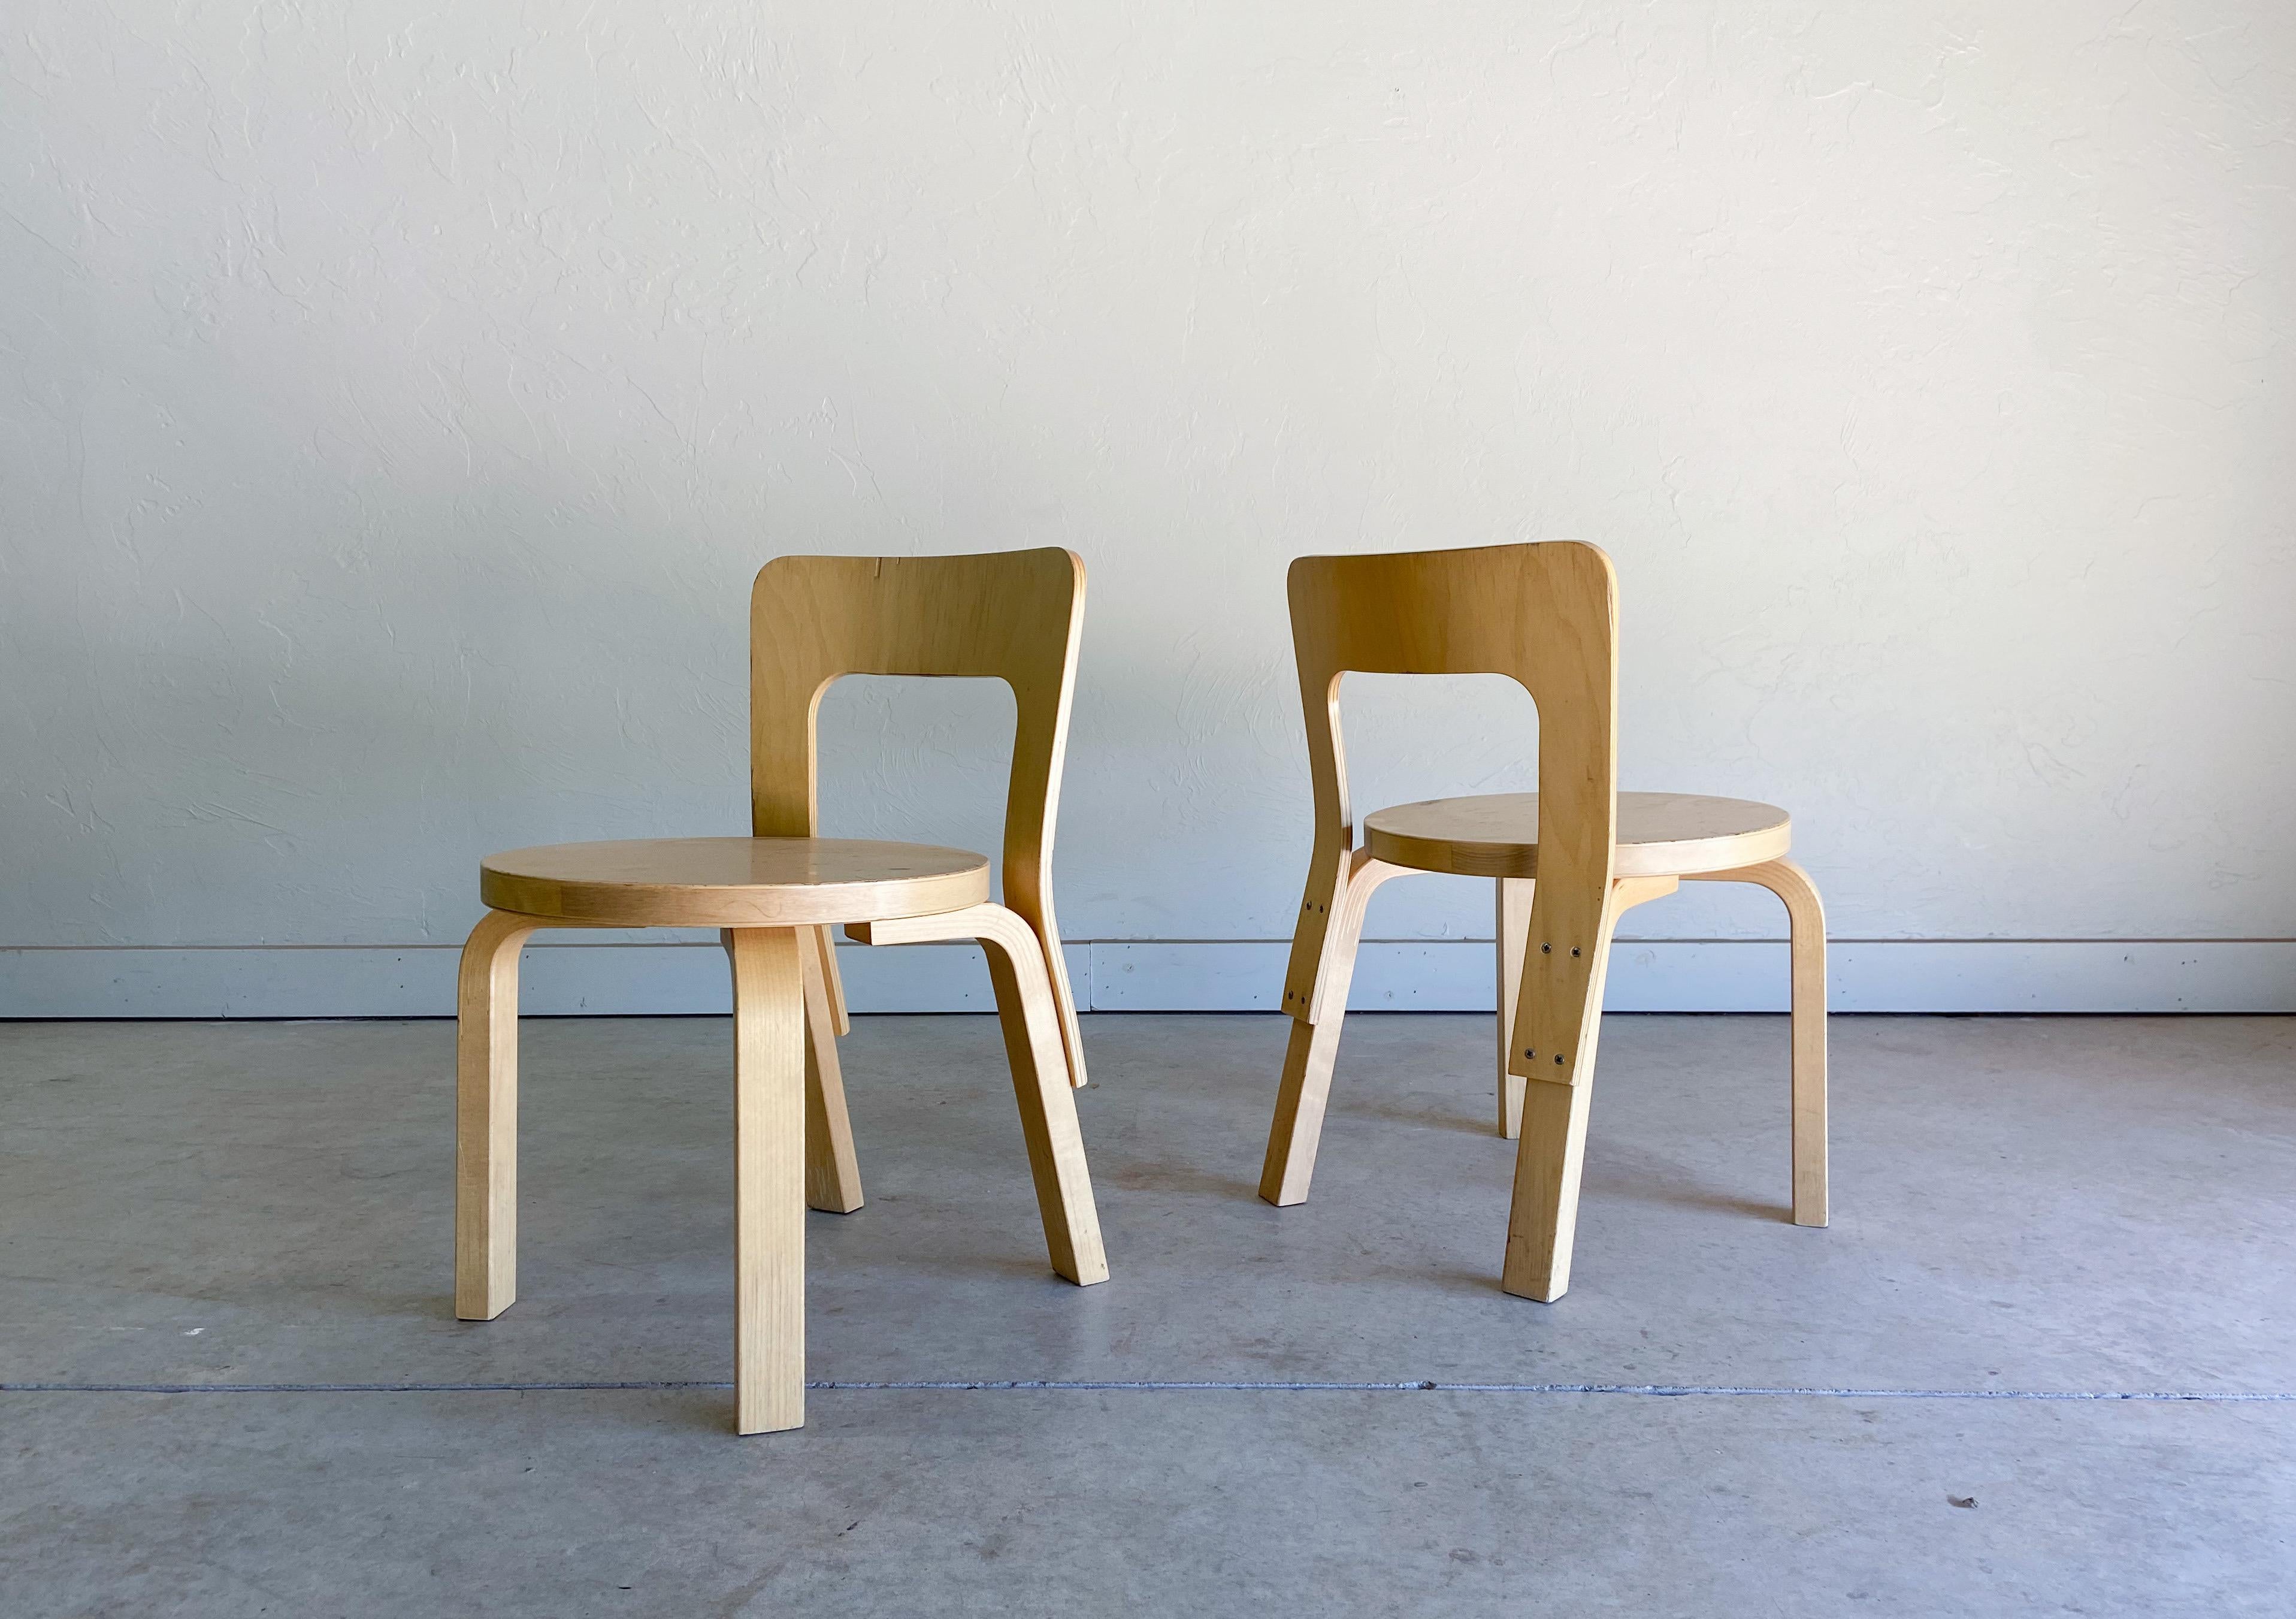 Angeboten wird ein Satz N65-Kinderstühle aus neuerer Produktion, die vom berühmten Architekten und Designer Alvar Aalto entworfen und von Artek hergestellt wurden. 

Zweifellos einer der bekanntesten und berühmtesten Entwürfe von Aalto. Ein